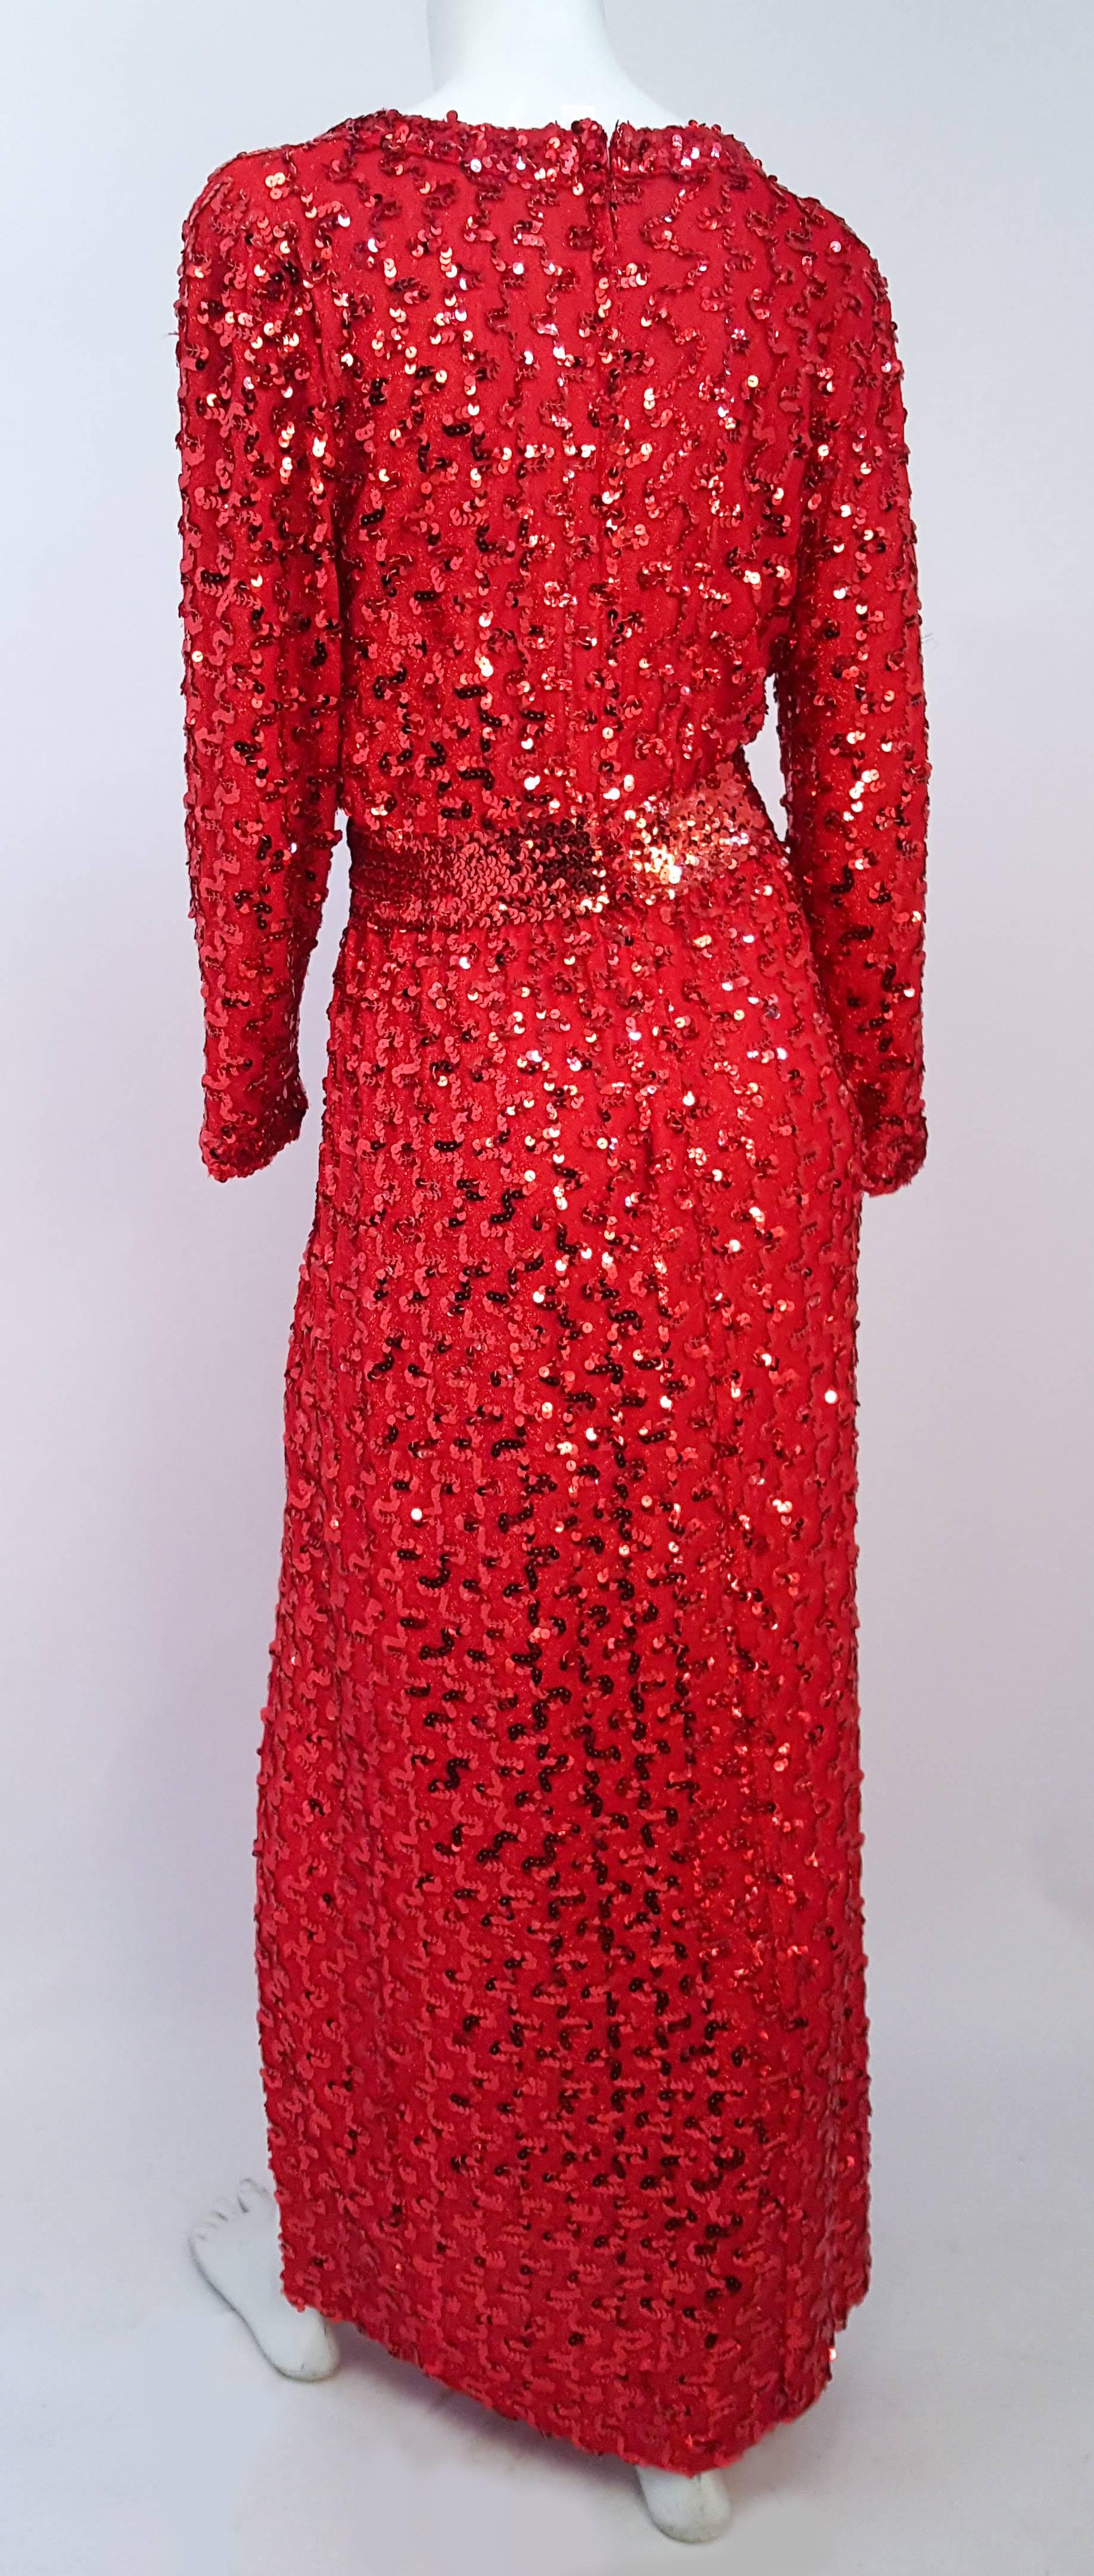 1970s sequin dress